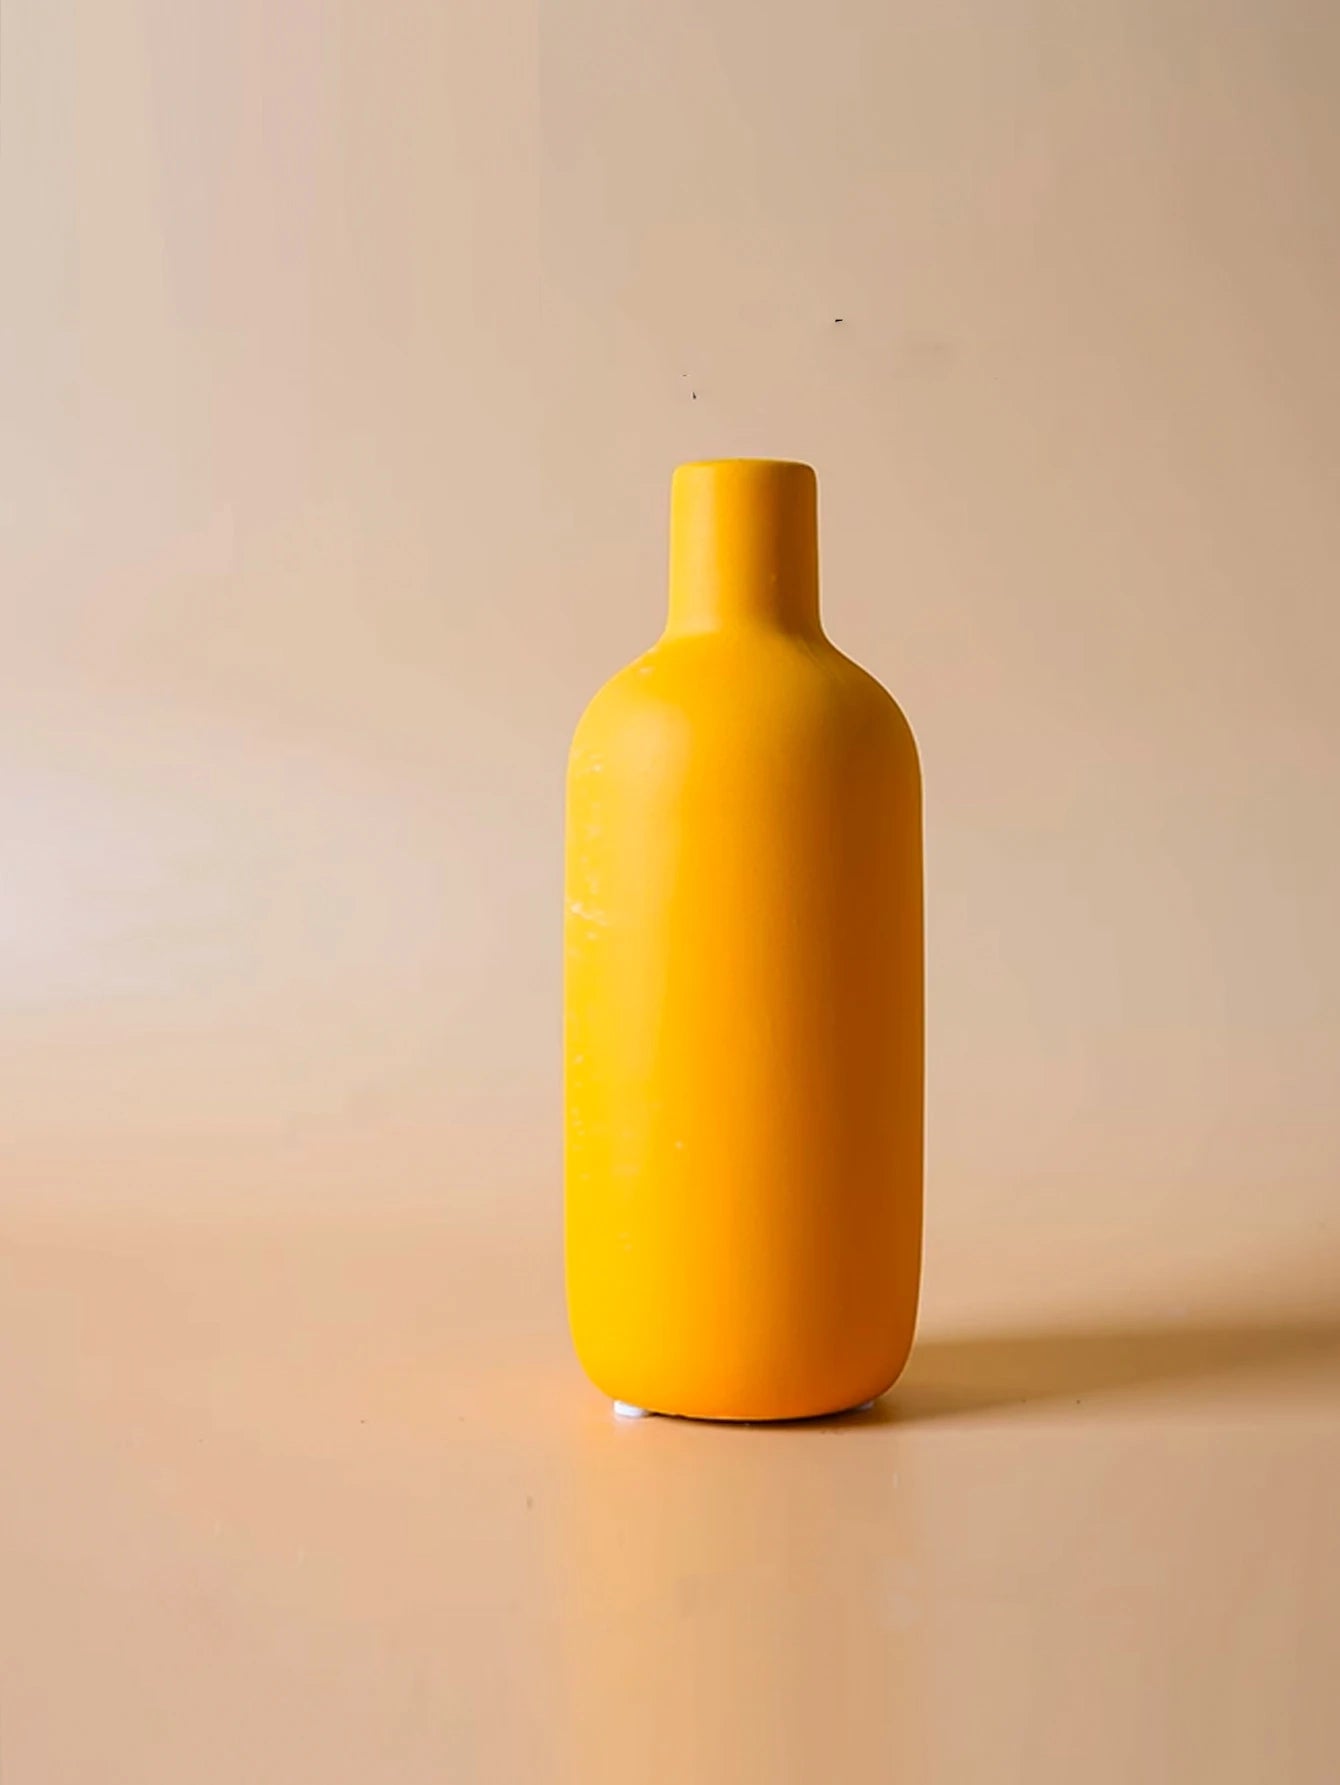 Vibrant Organic Ceramic Vases